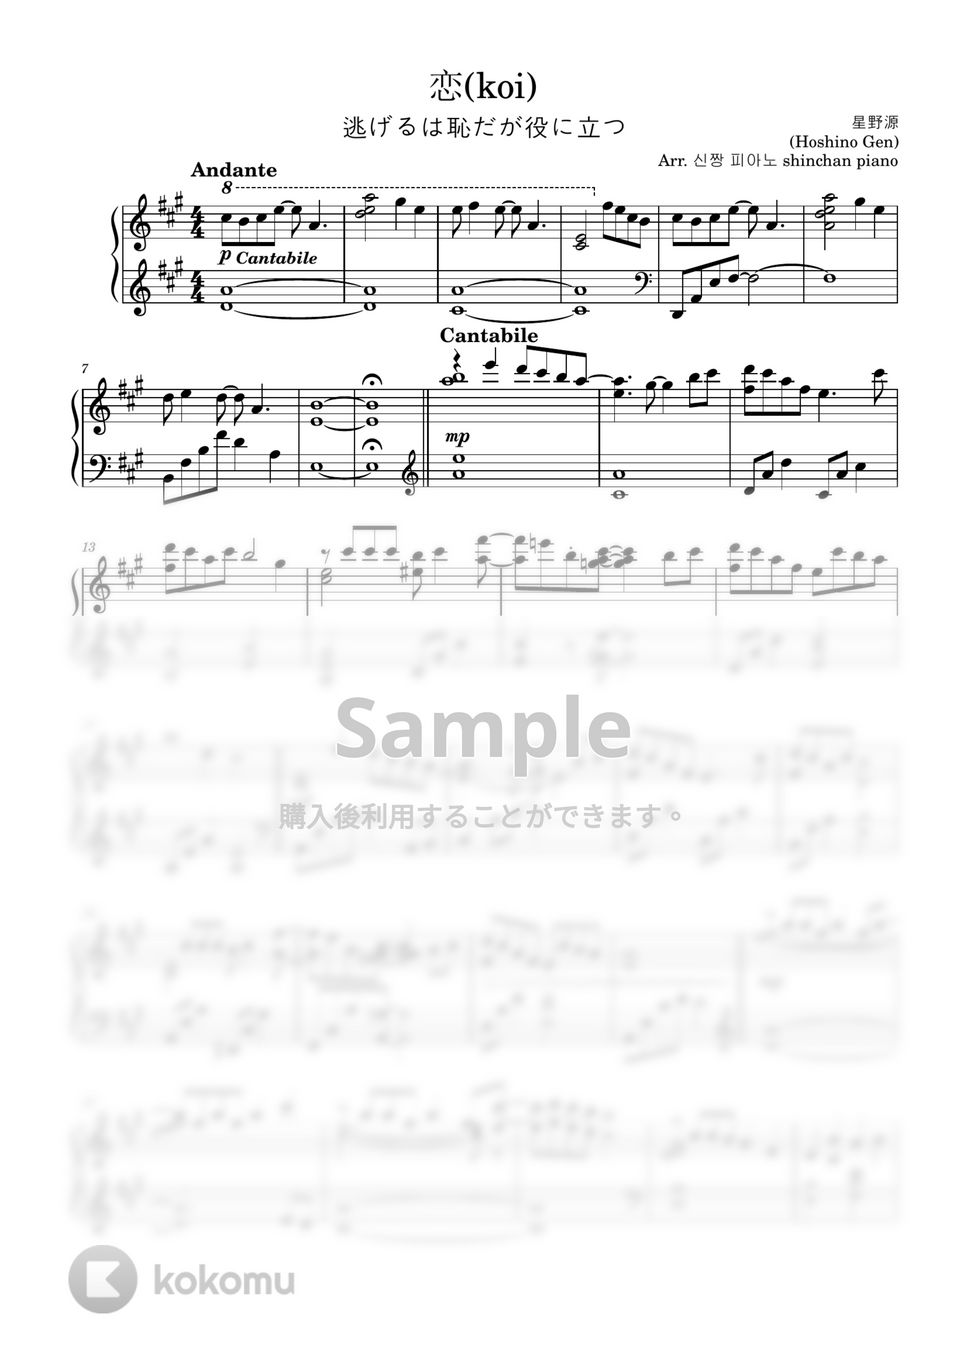 星野源 - 恋 (優しいピアノソロバージョン) by しんちゃんピアノ